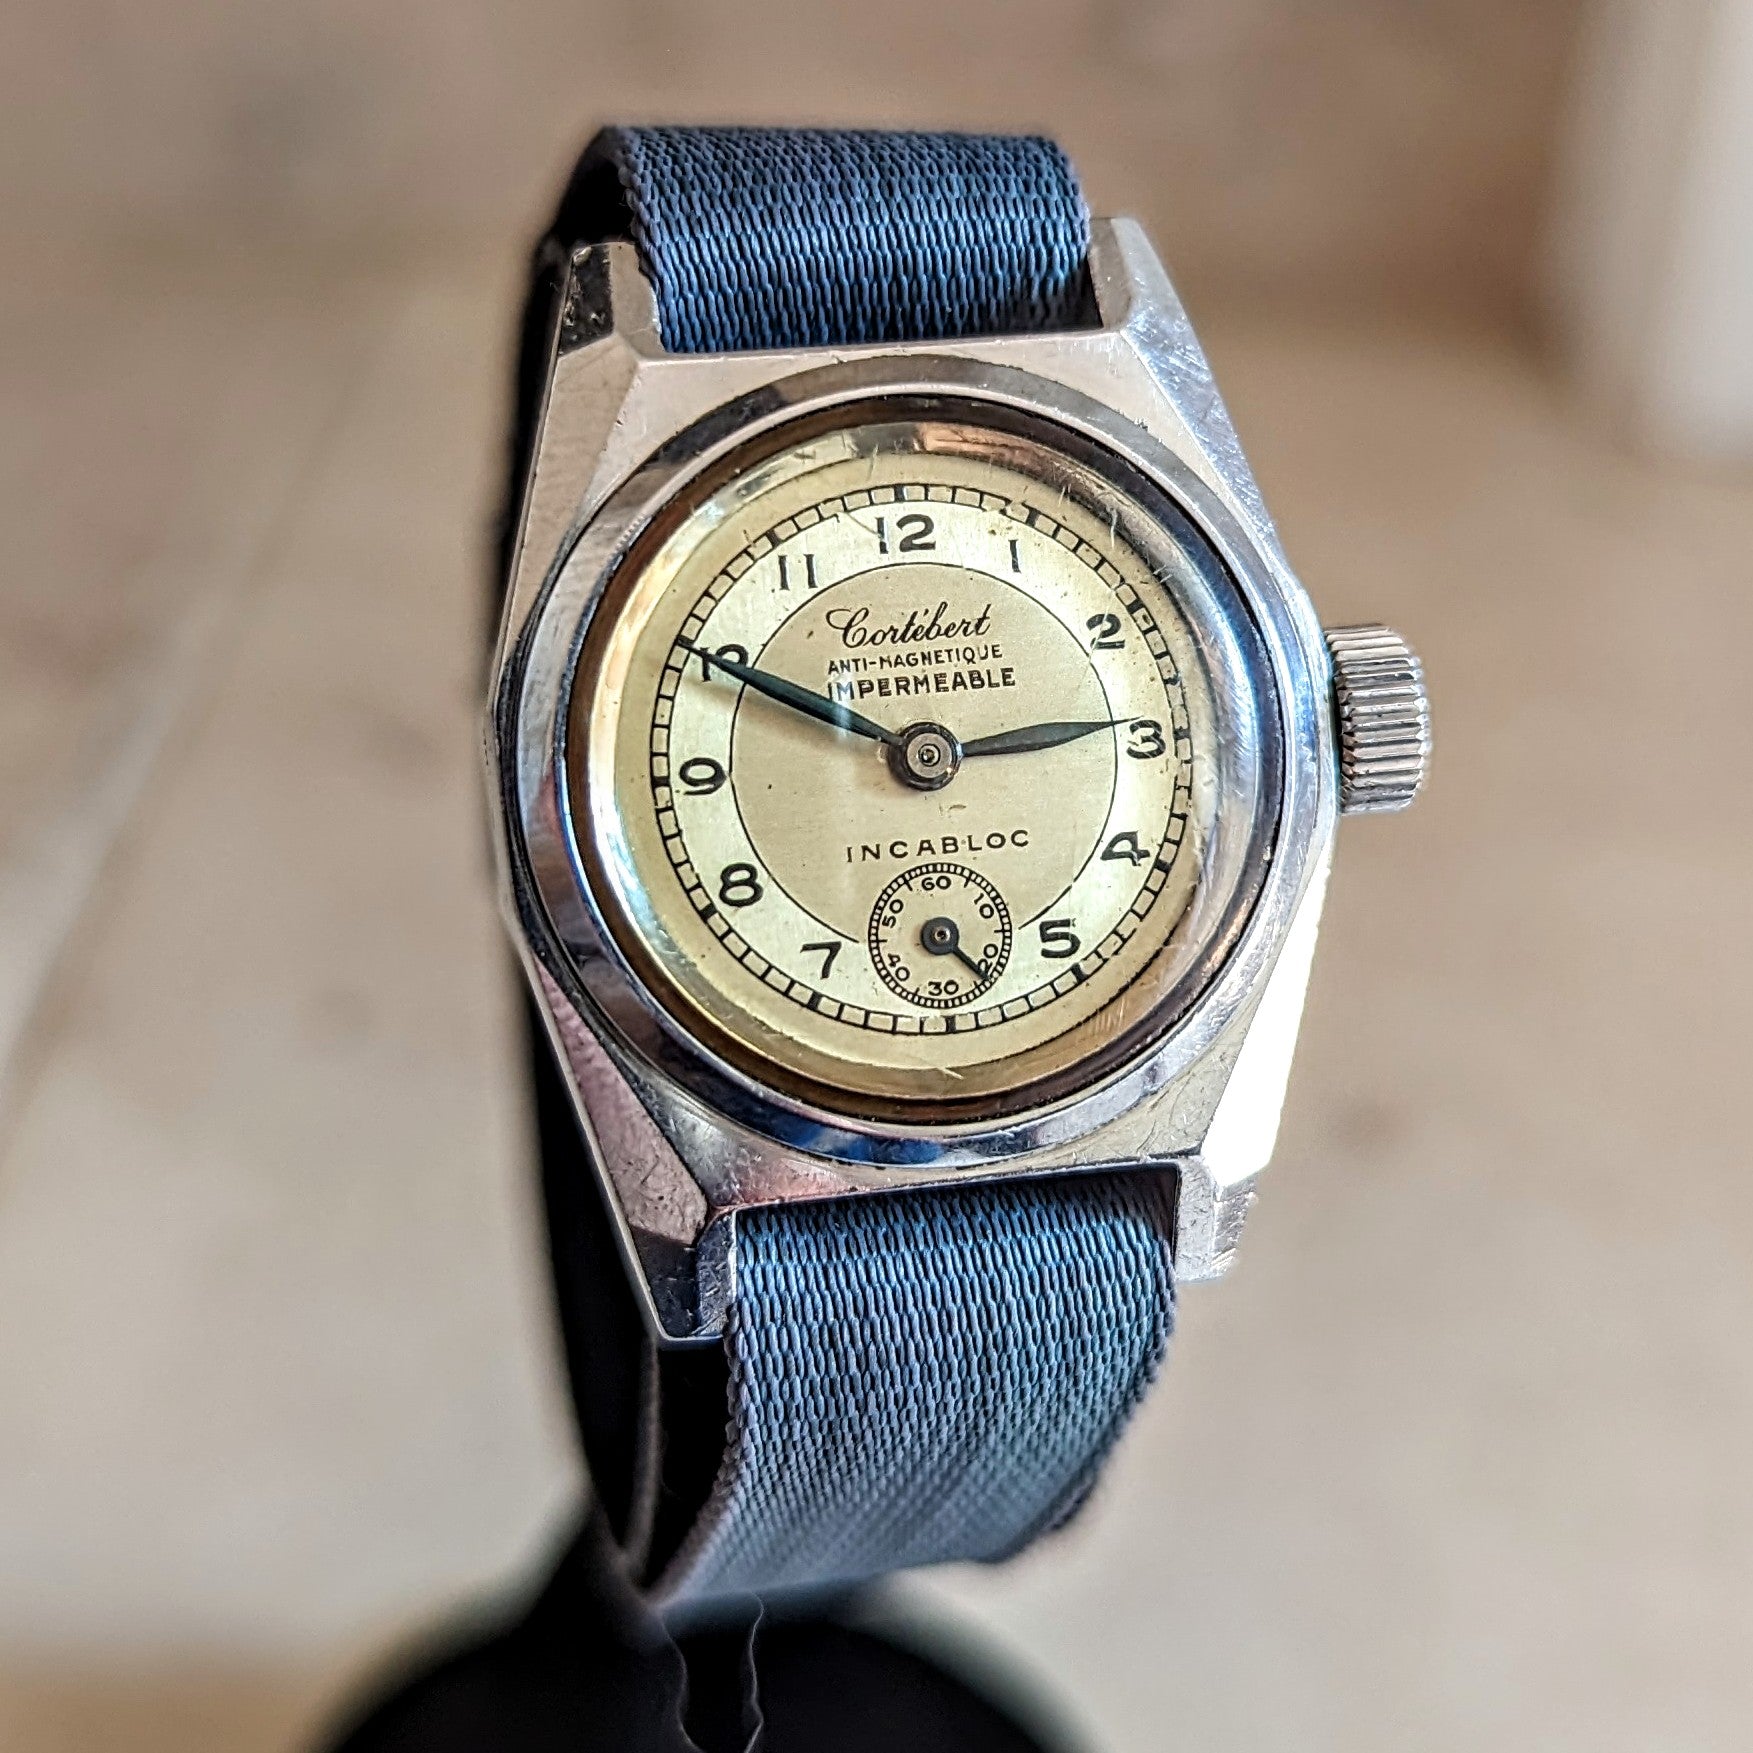 CORTEBERT Military Wristwatch 26mm Vintage WWII European Watch S.S.